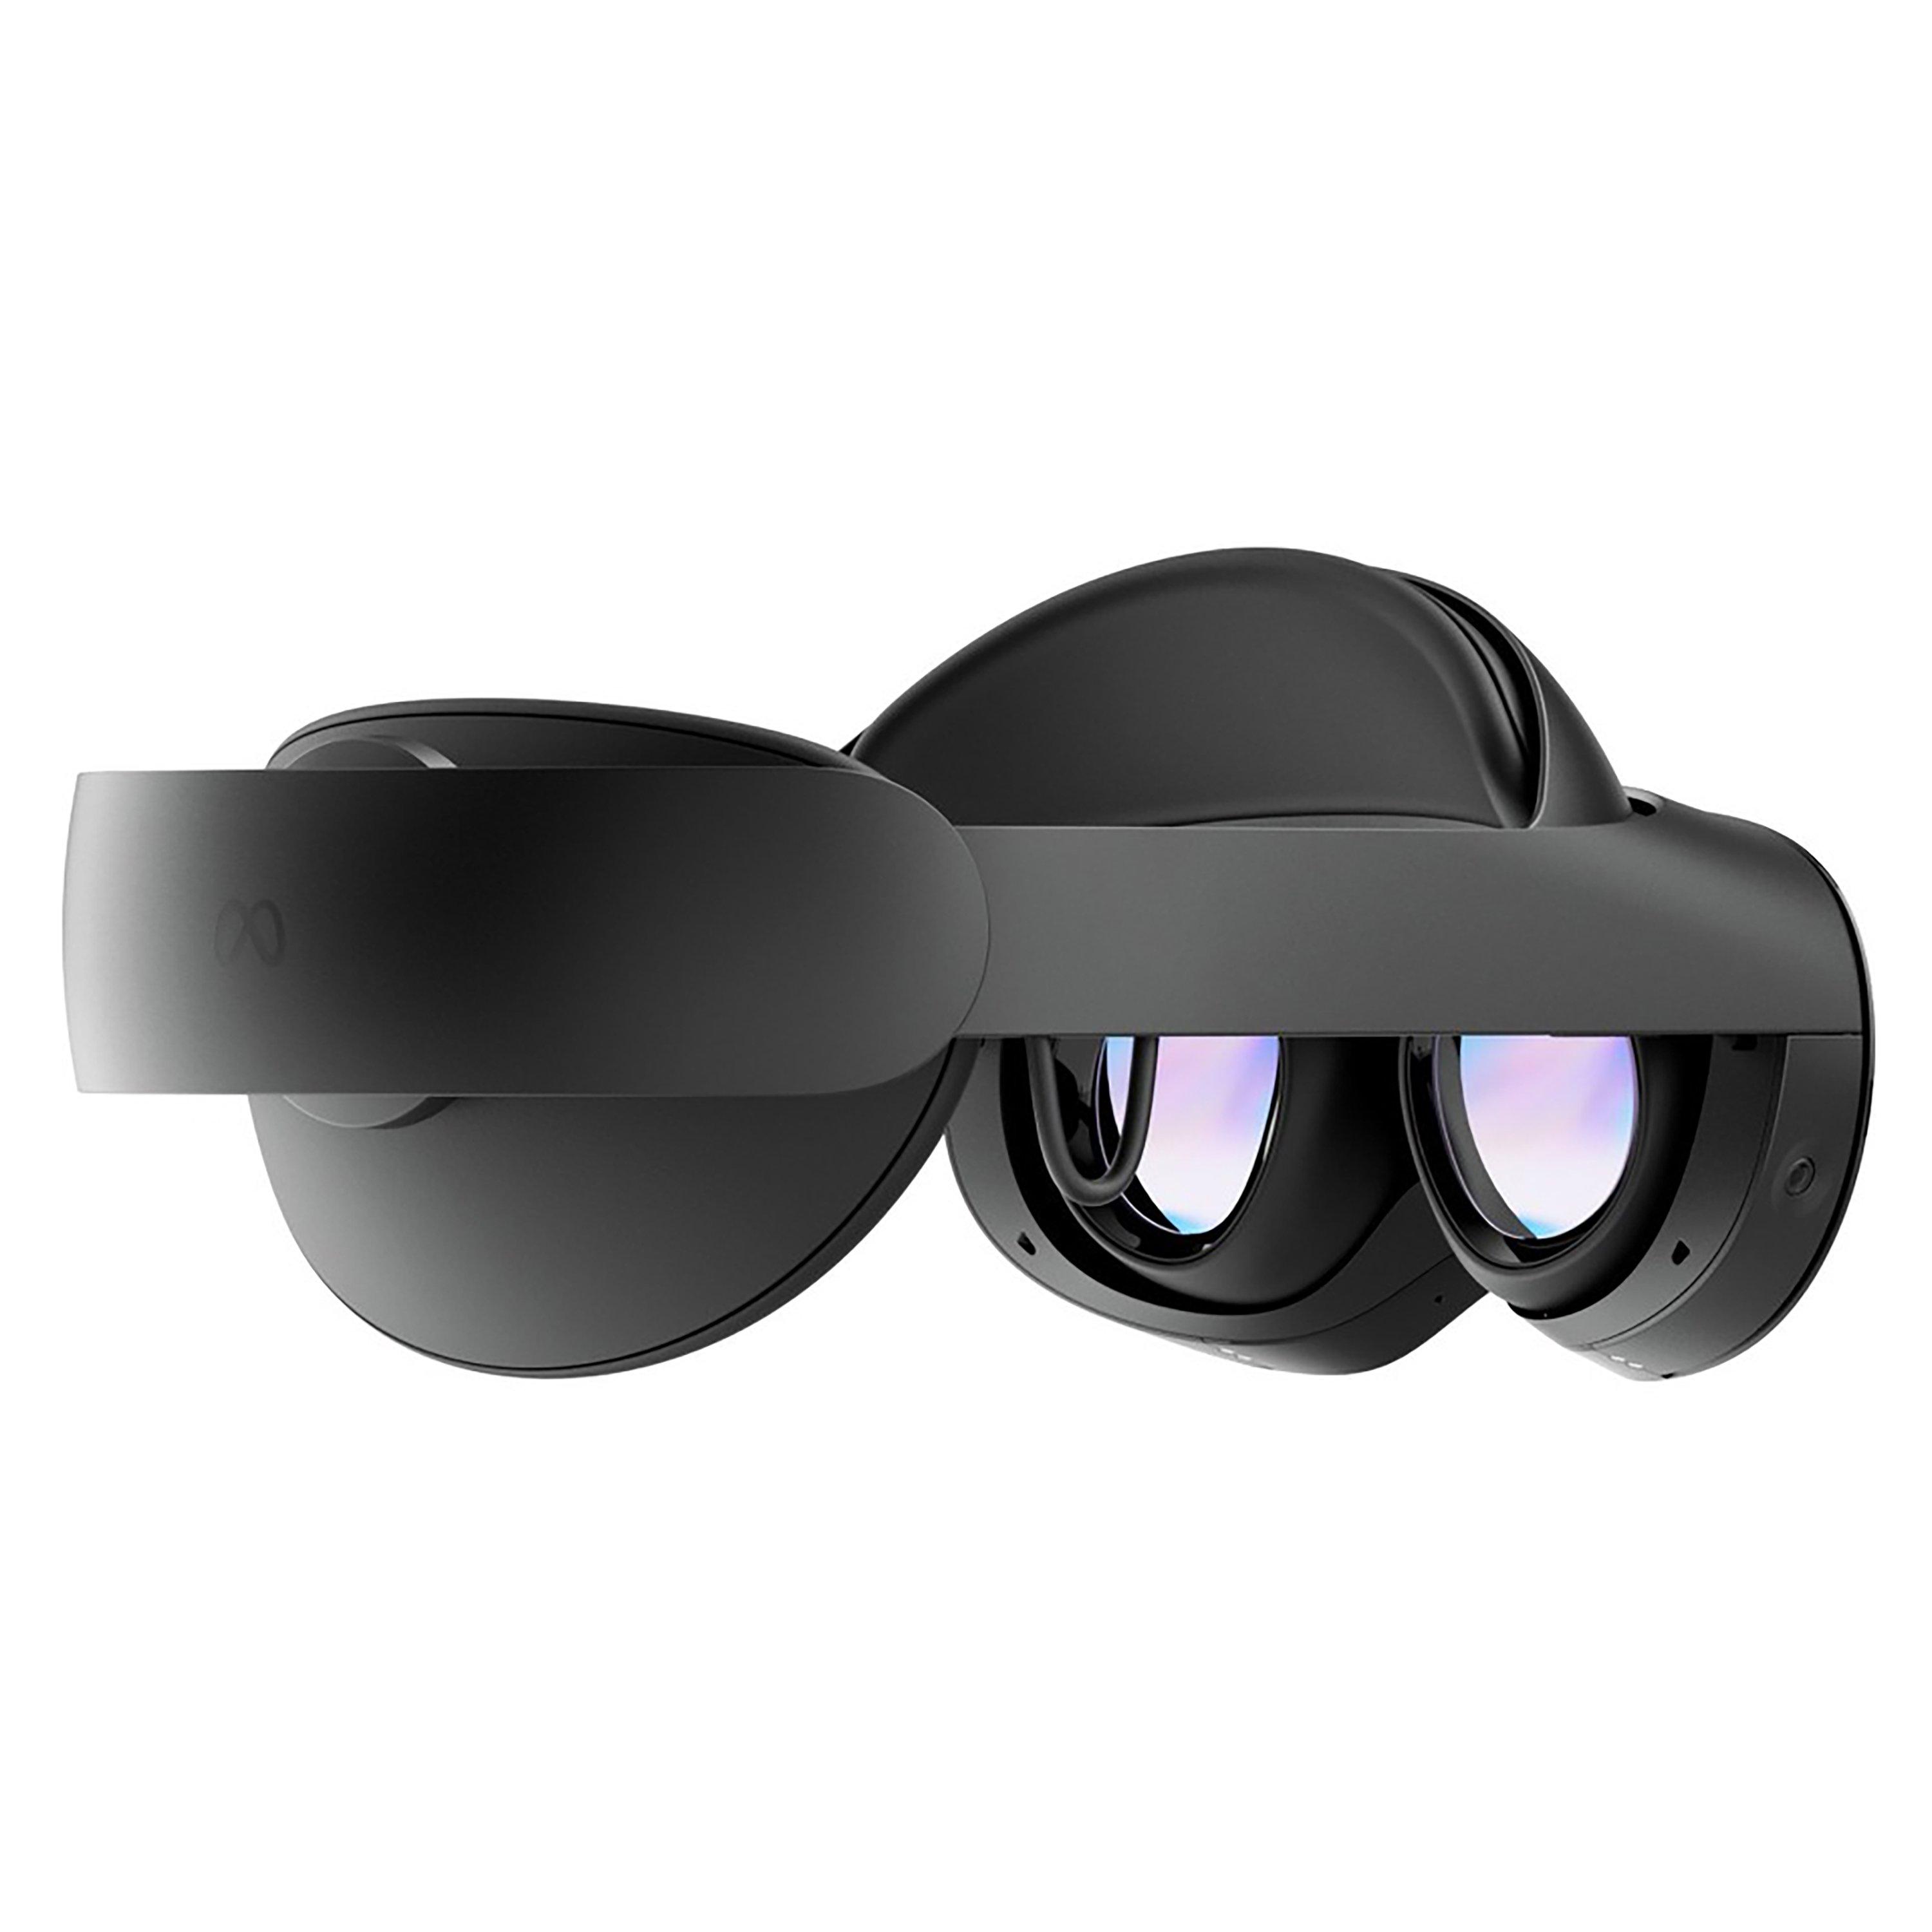 Meta Quest Pro VR Headset | GameStop